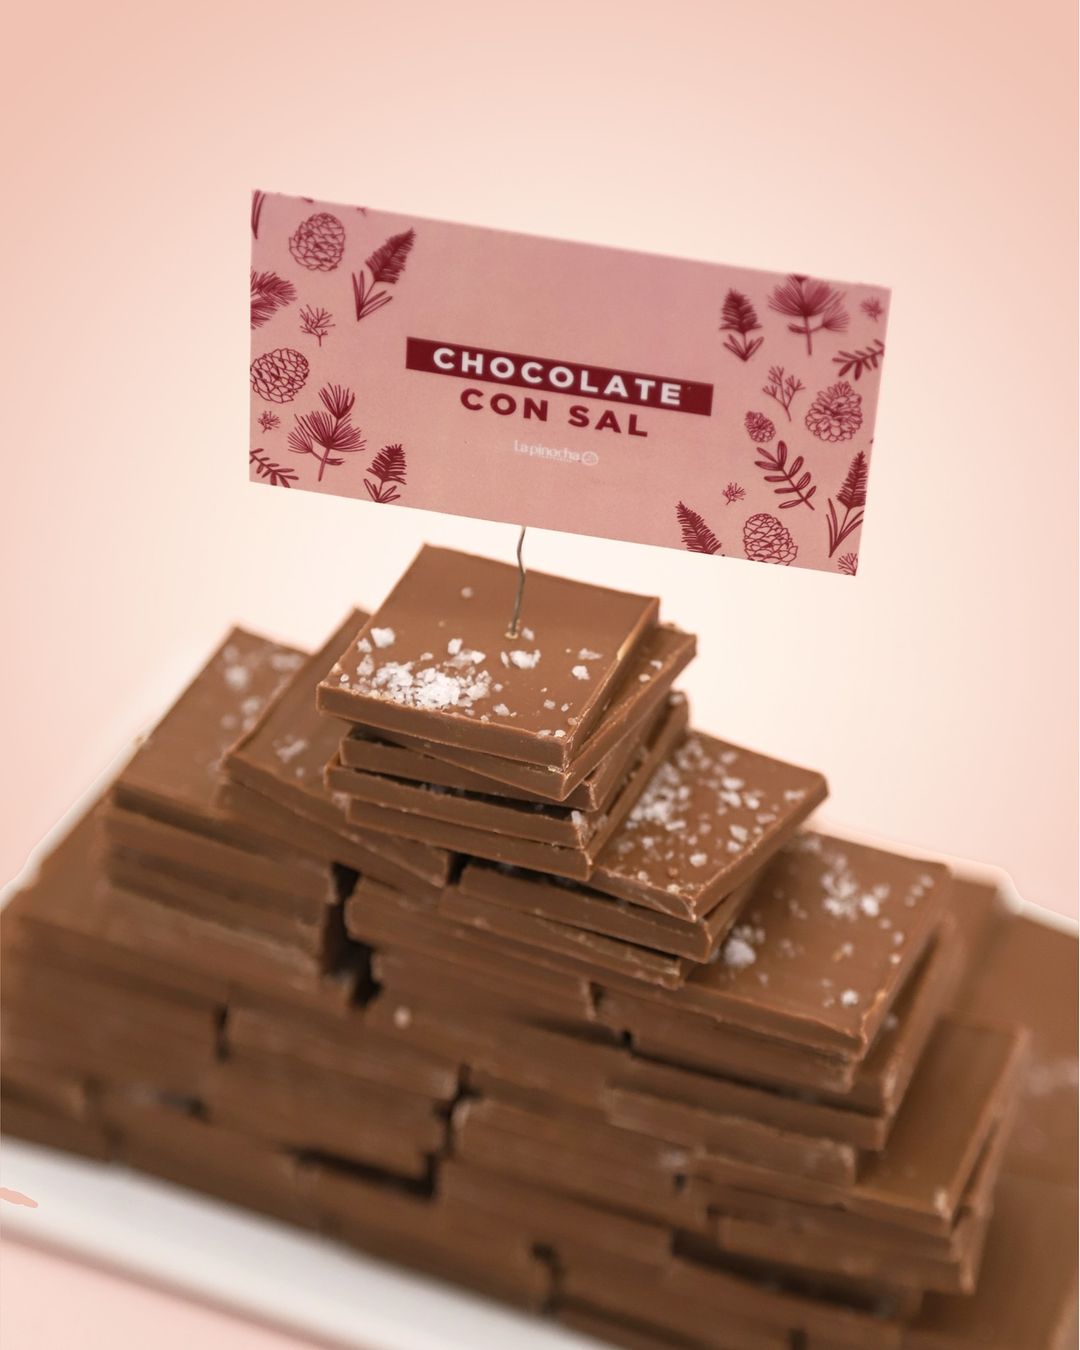 Más de 60 variedades de chocolate y alfajores se suman al menú dulce disponible en Posadas  imagen-4